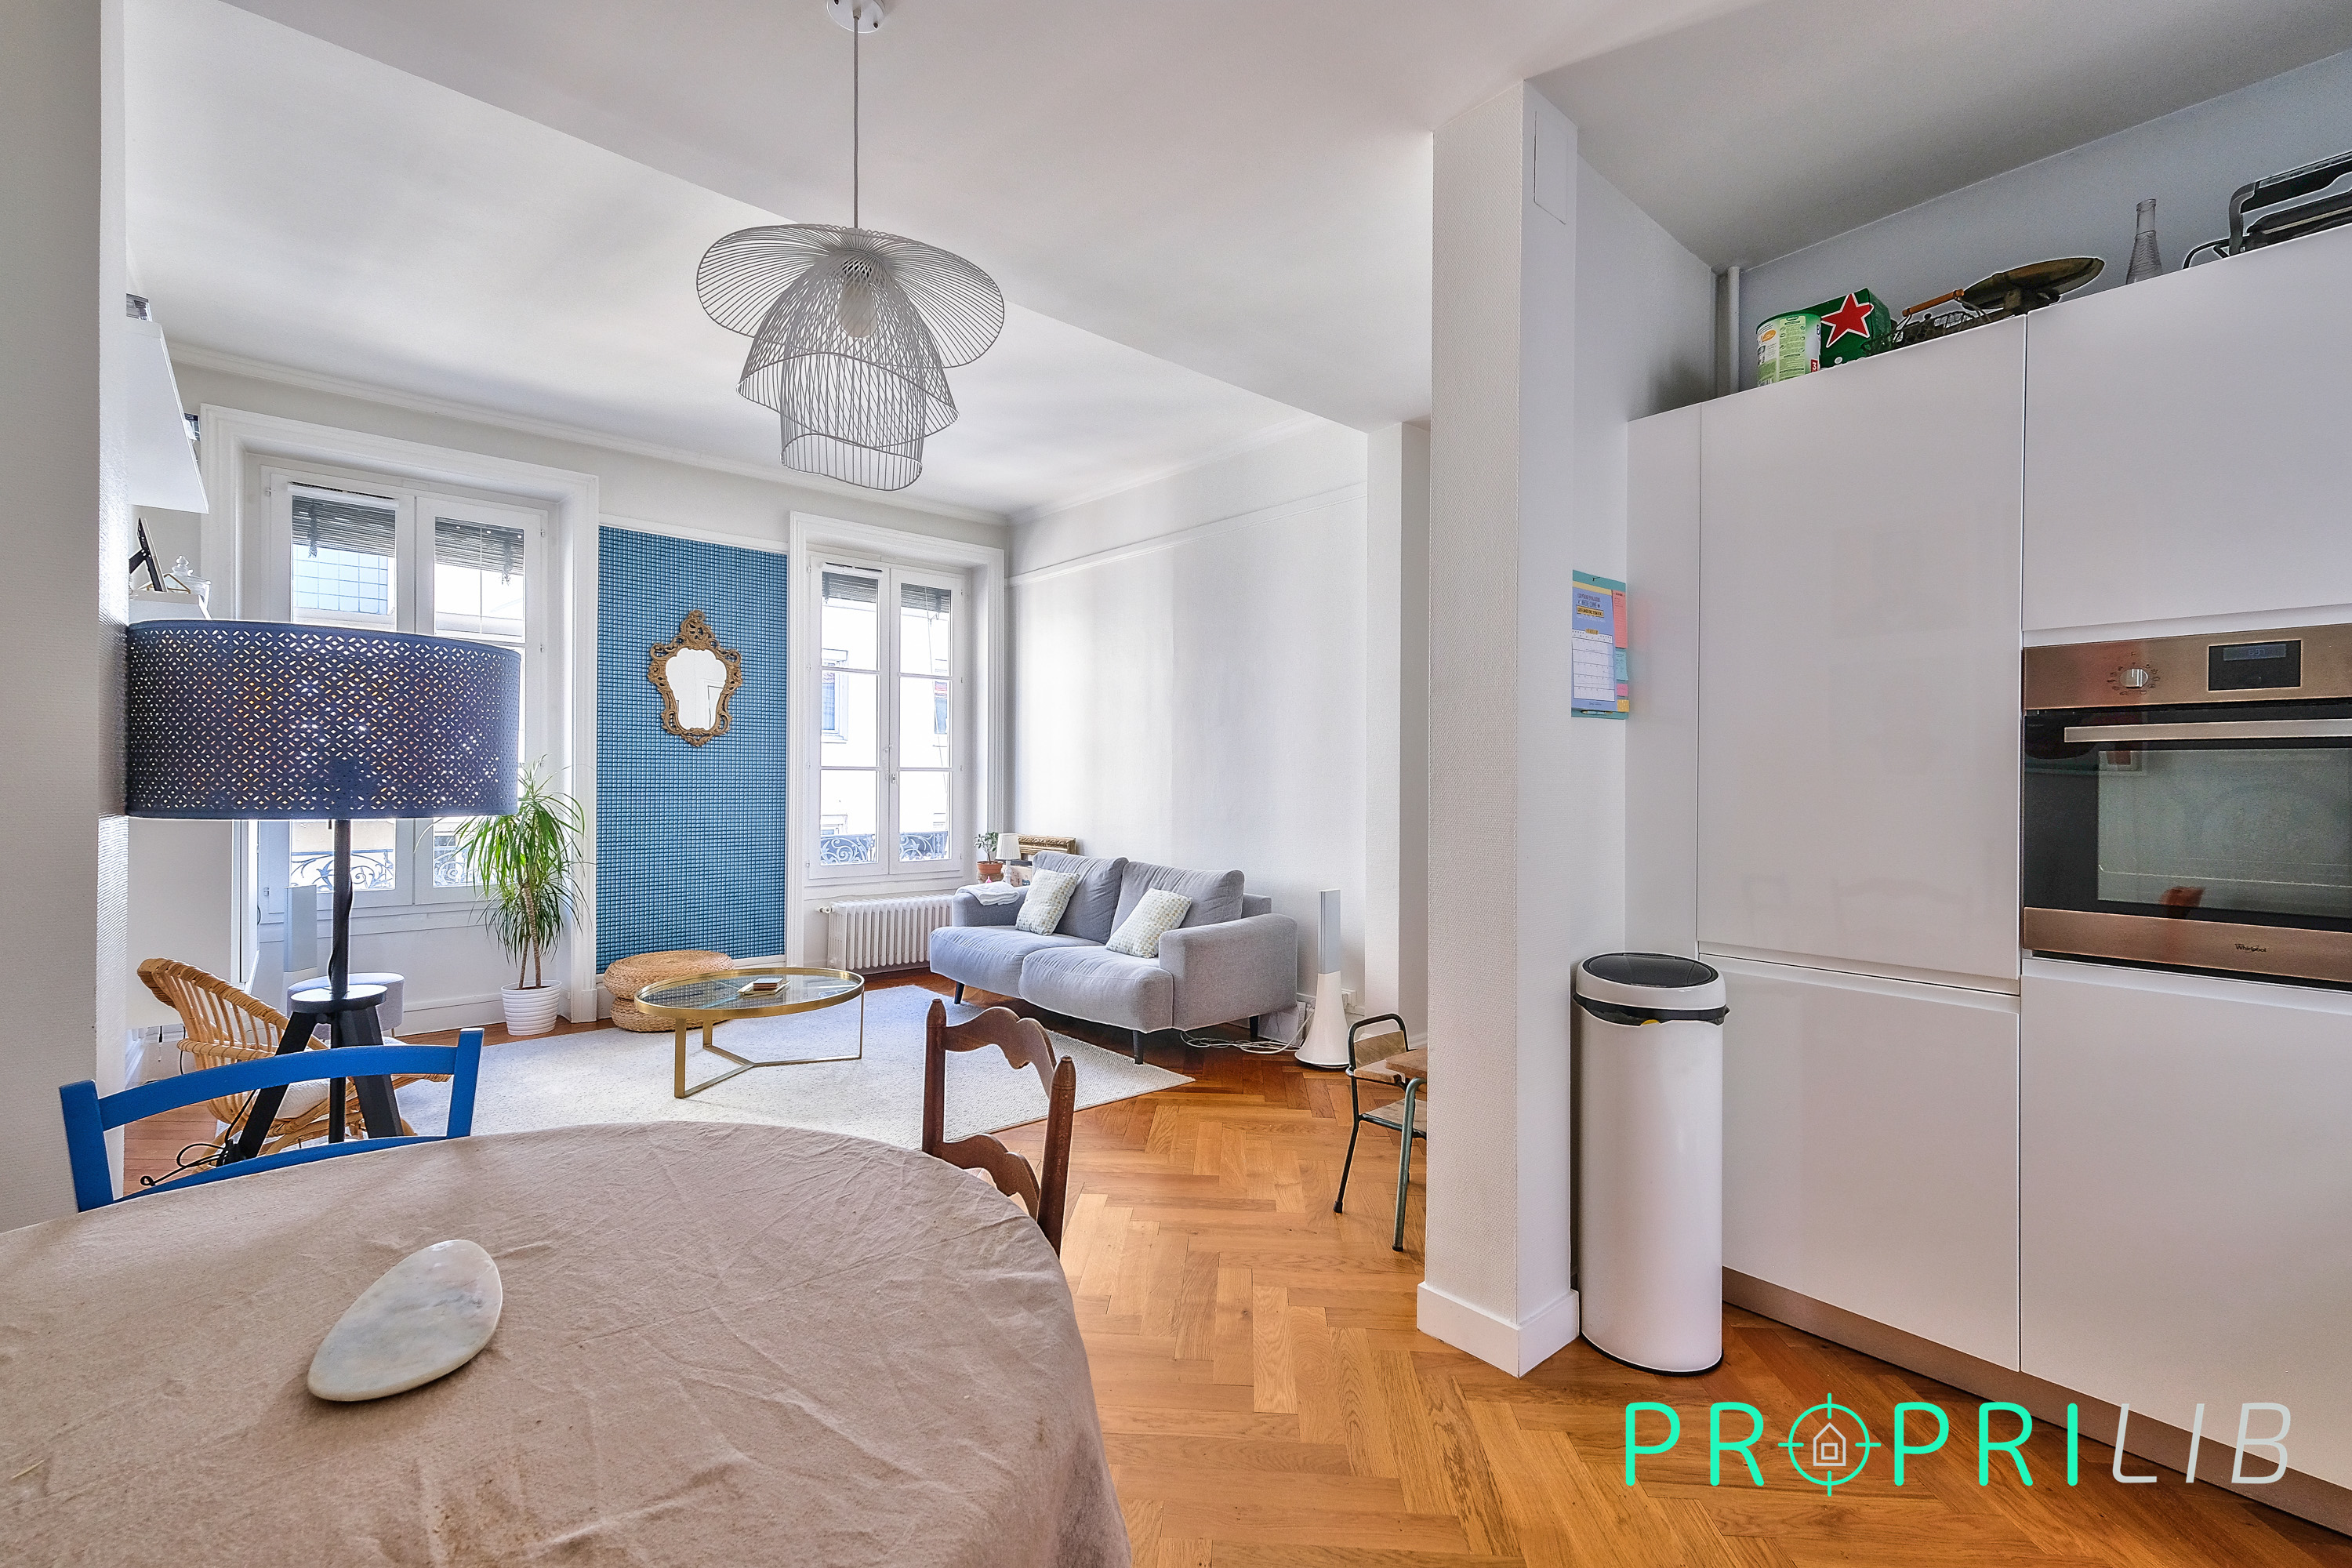 PropriLib l’agence immobilière en ligne vend cet appartement à Lyon 3ème